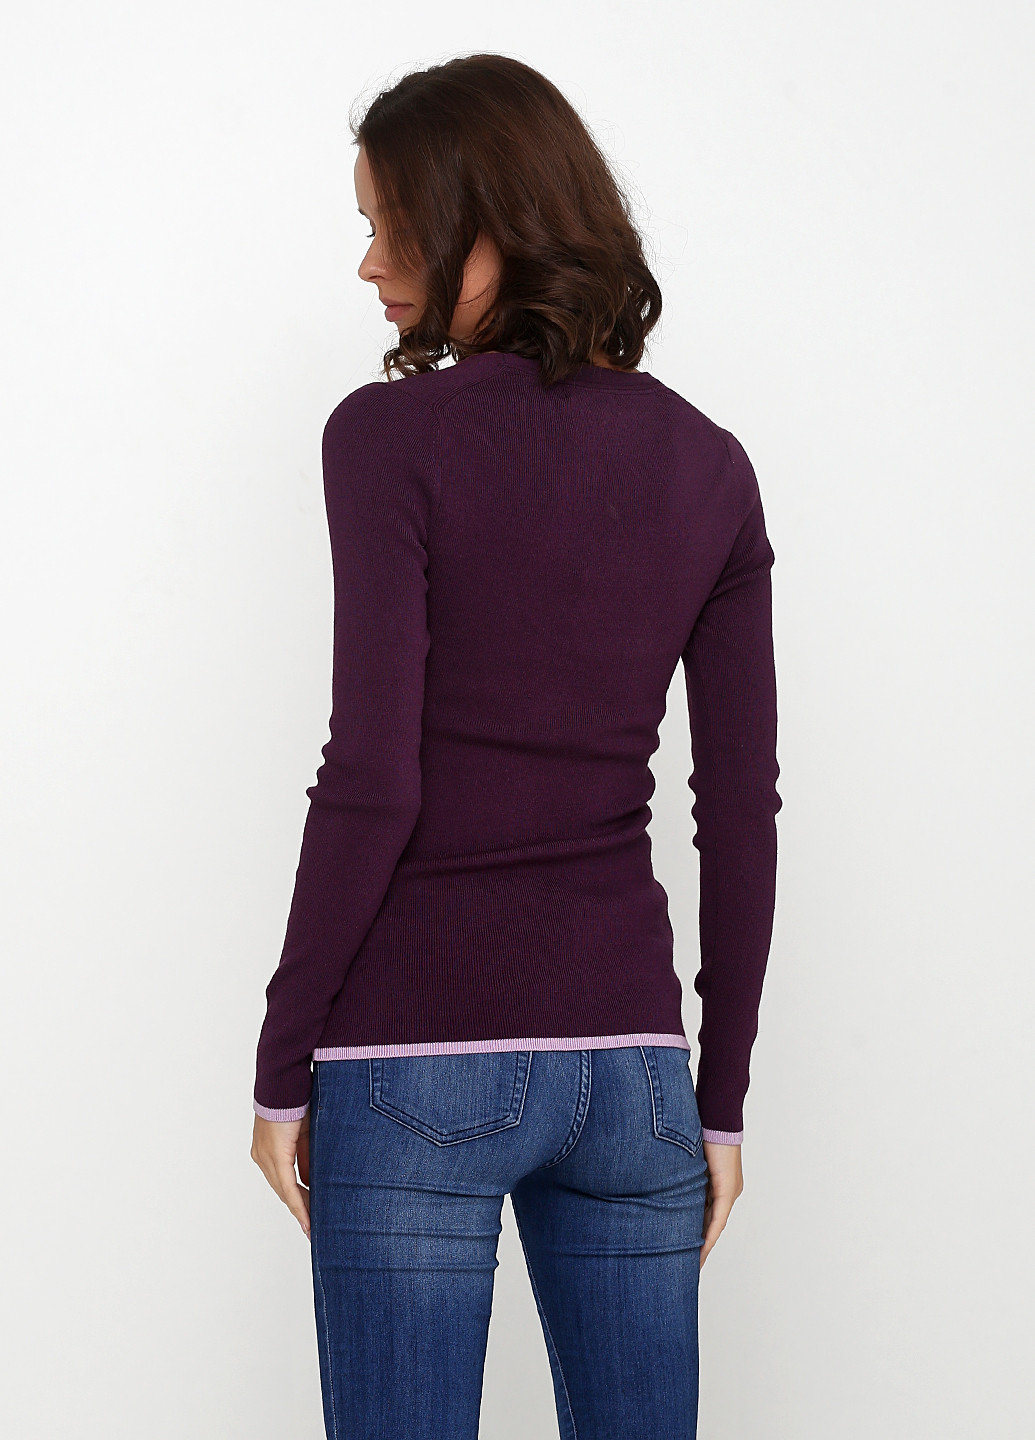 Фиолетовый демисезонный пуловер пуловер Banana Republic